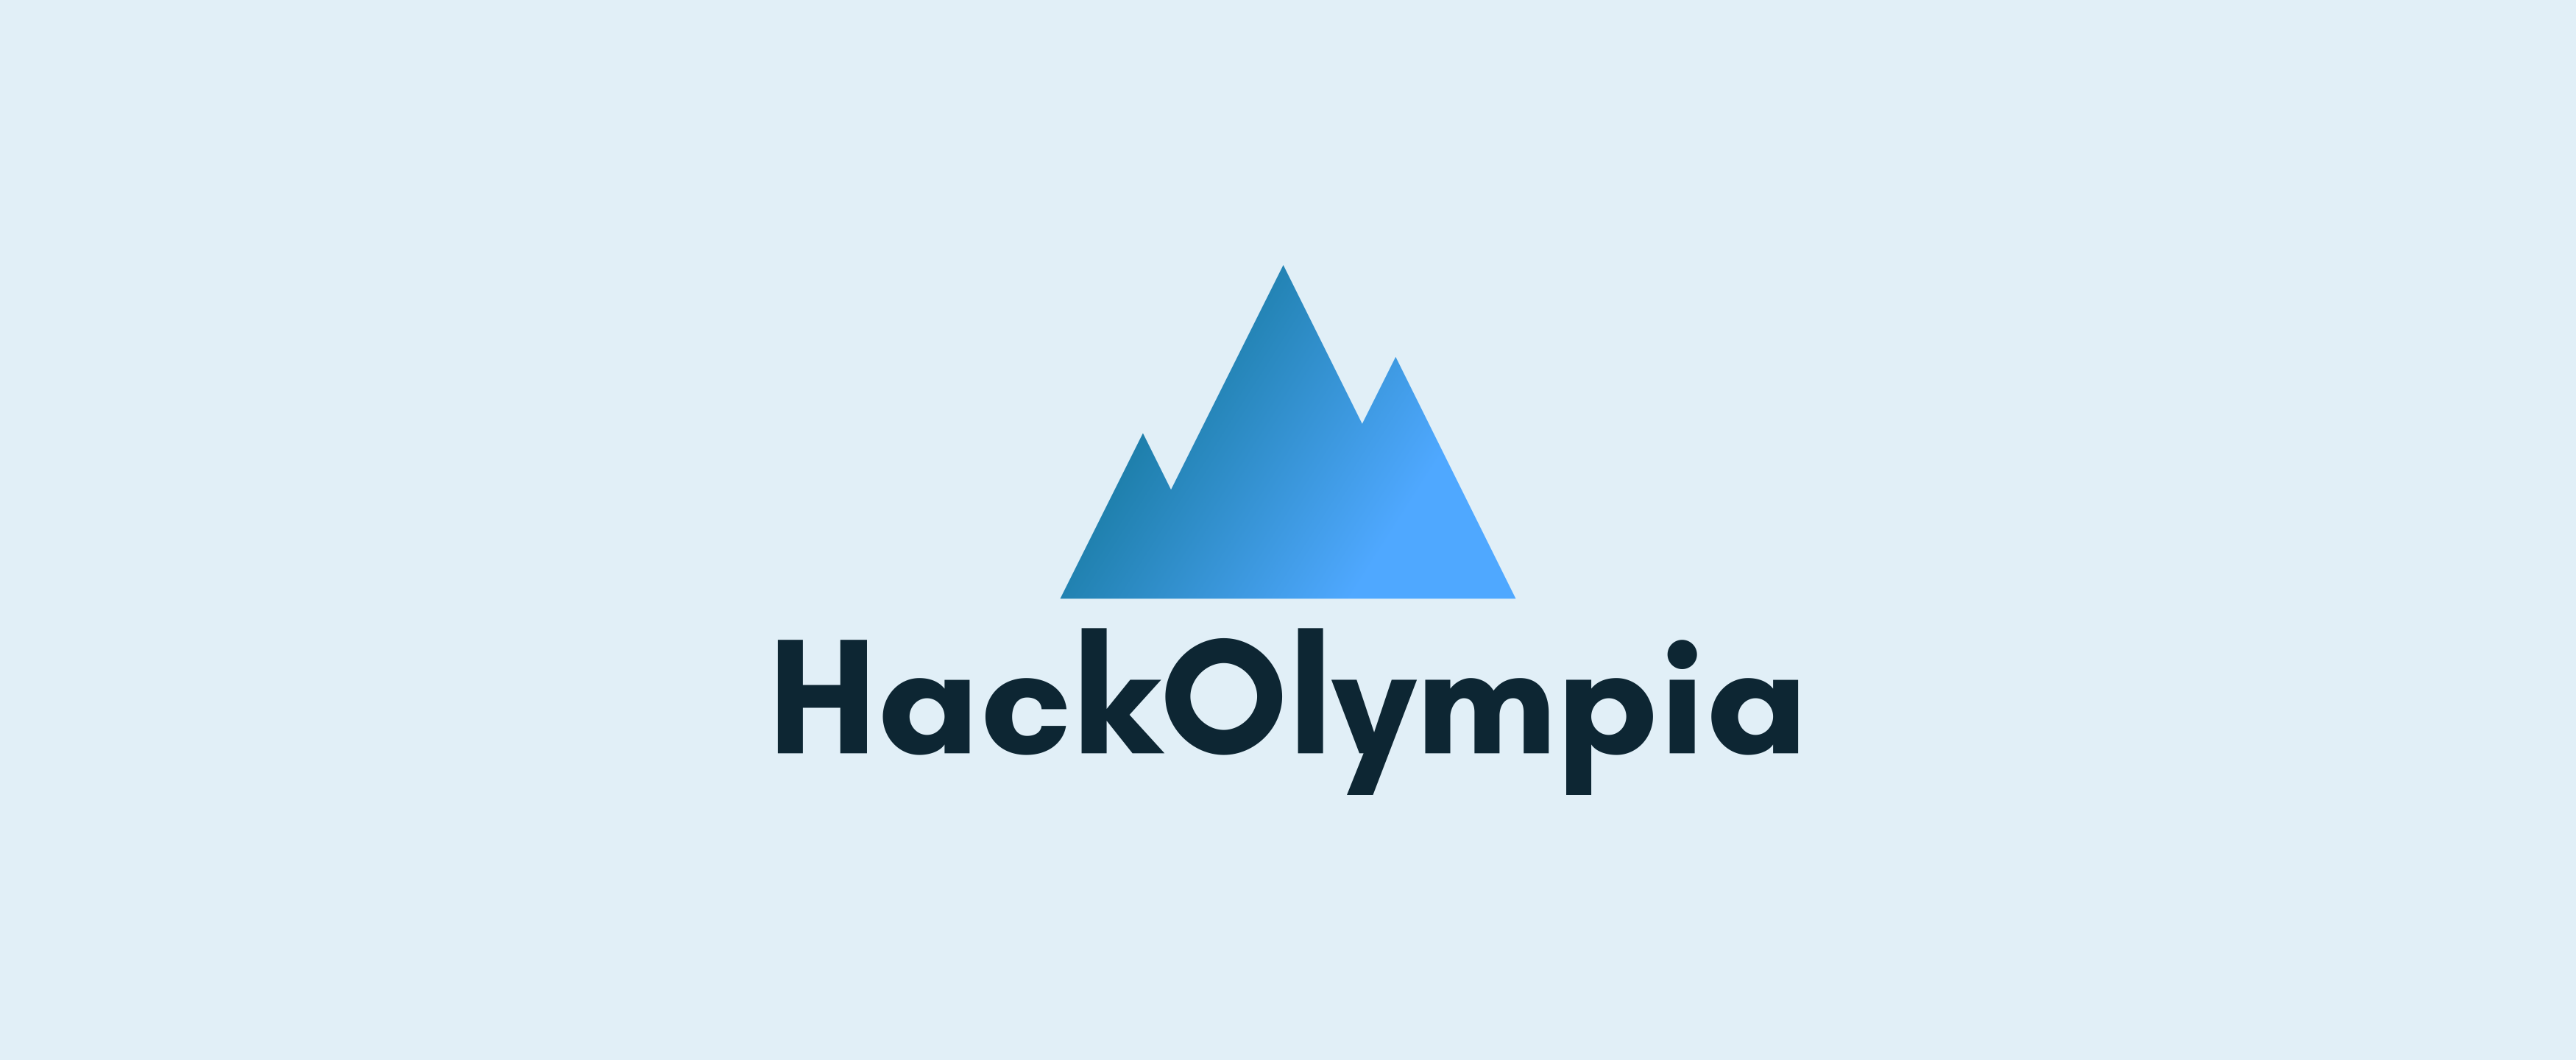 HackOlympia logo